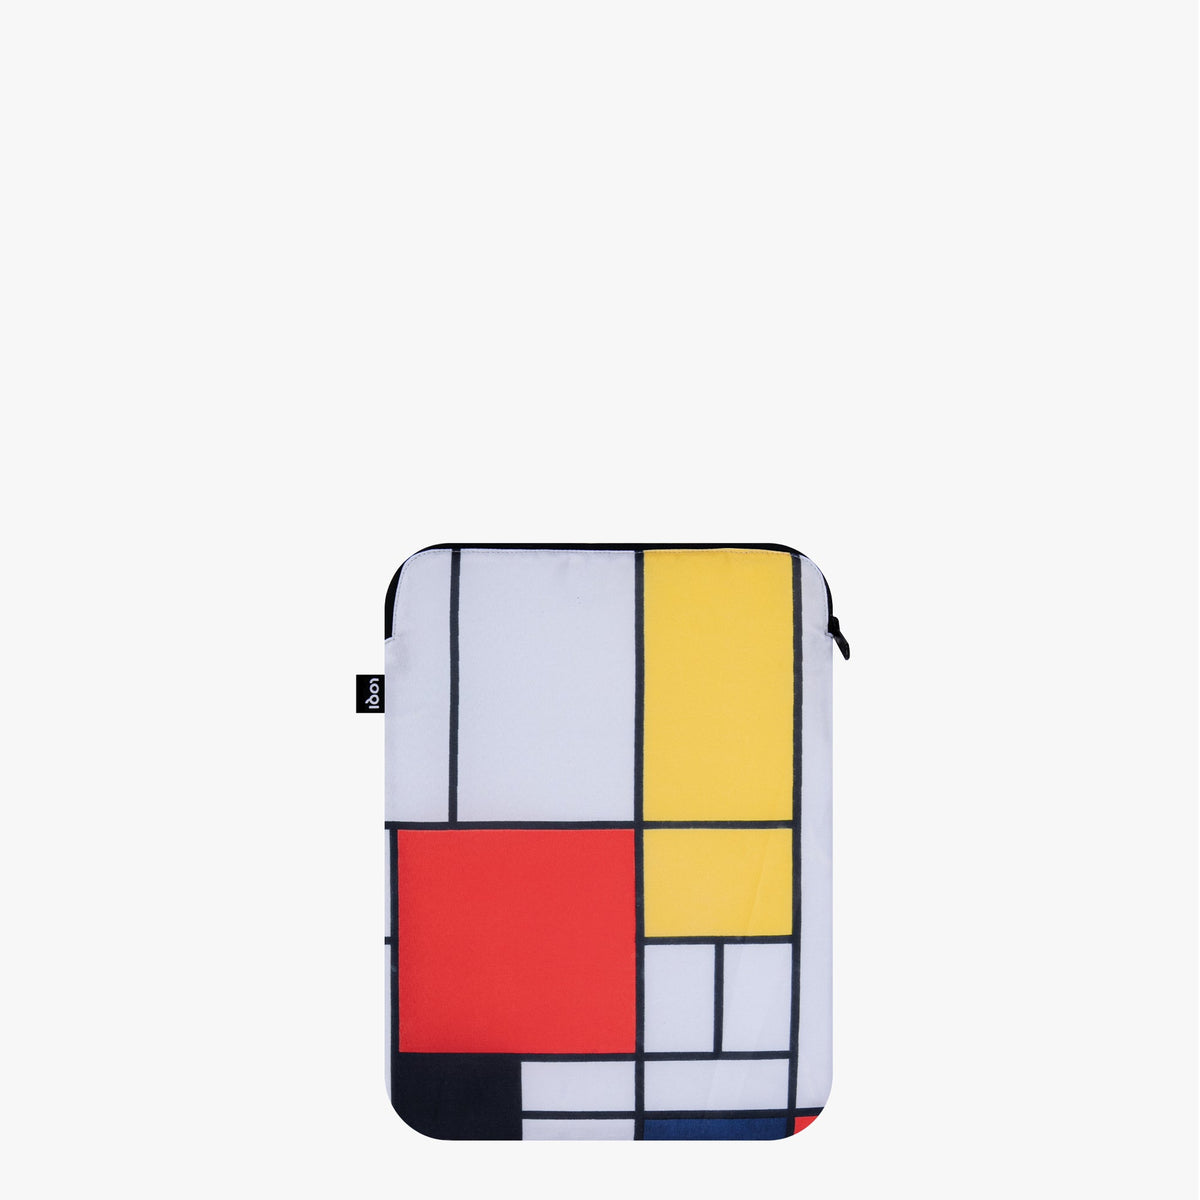 Composition avec la housse recyclée rouge, jaune, bleue et noire pour ordinateur portable 13 pouces